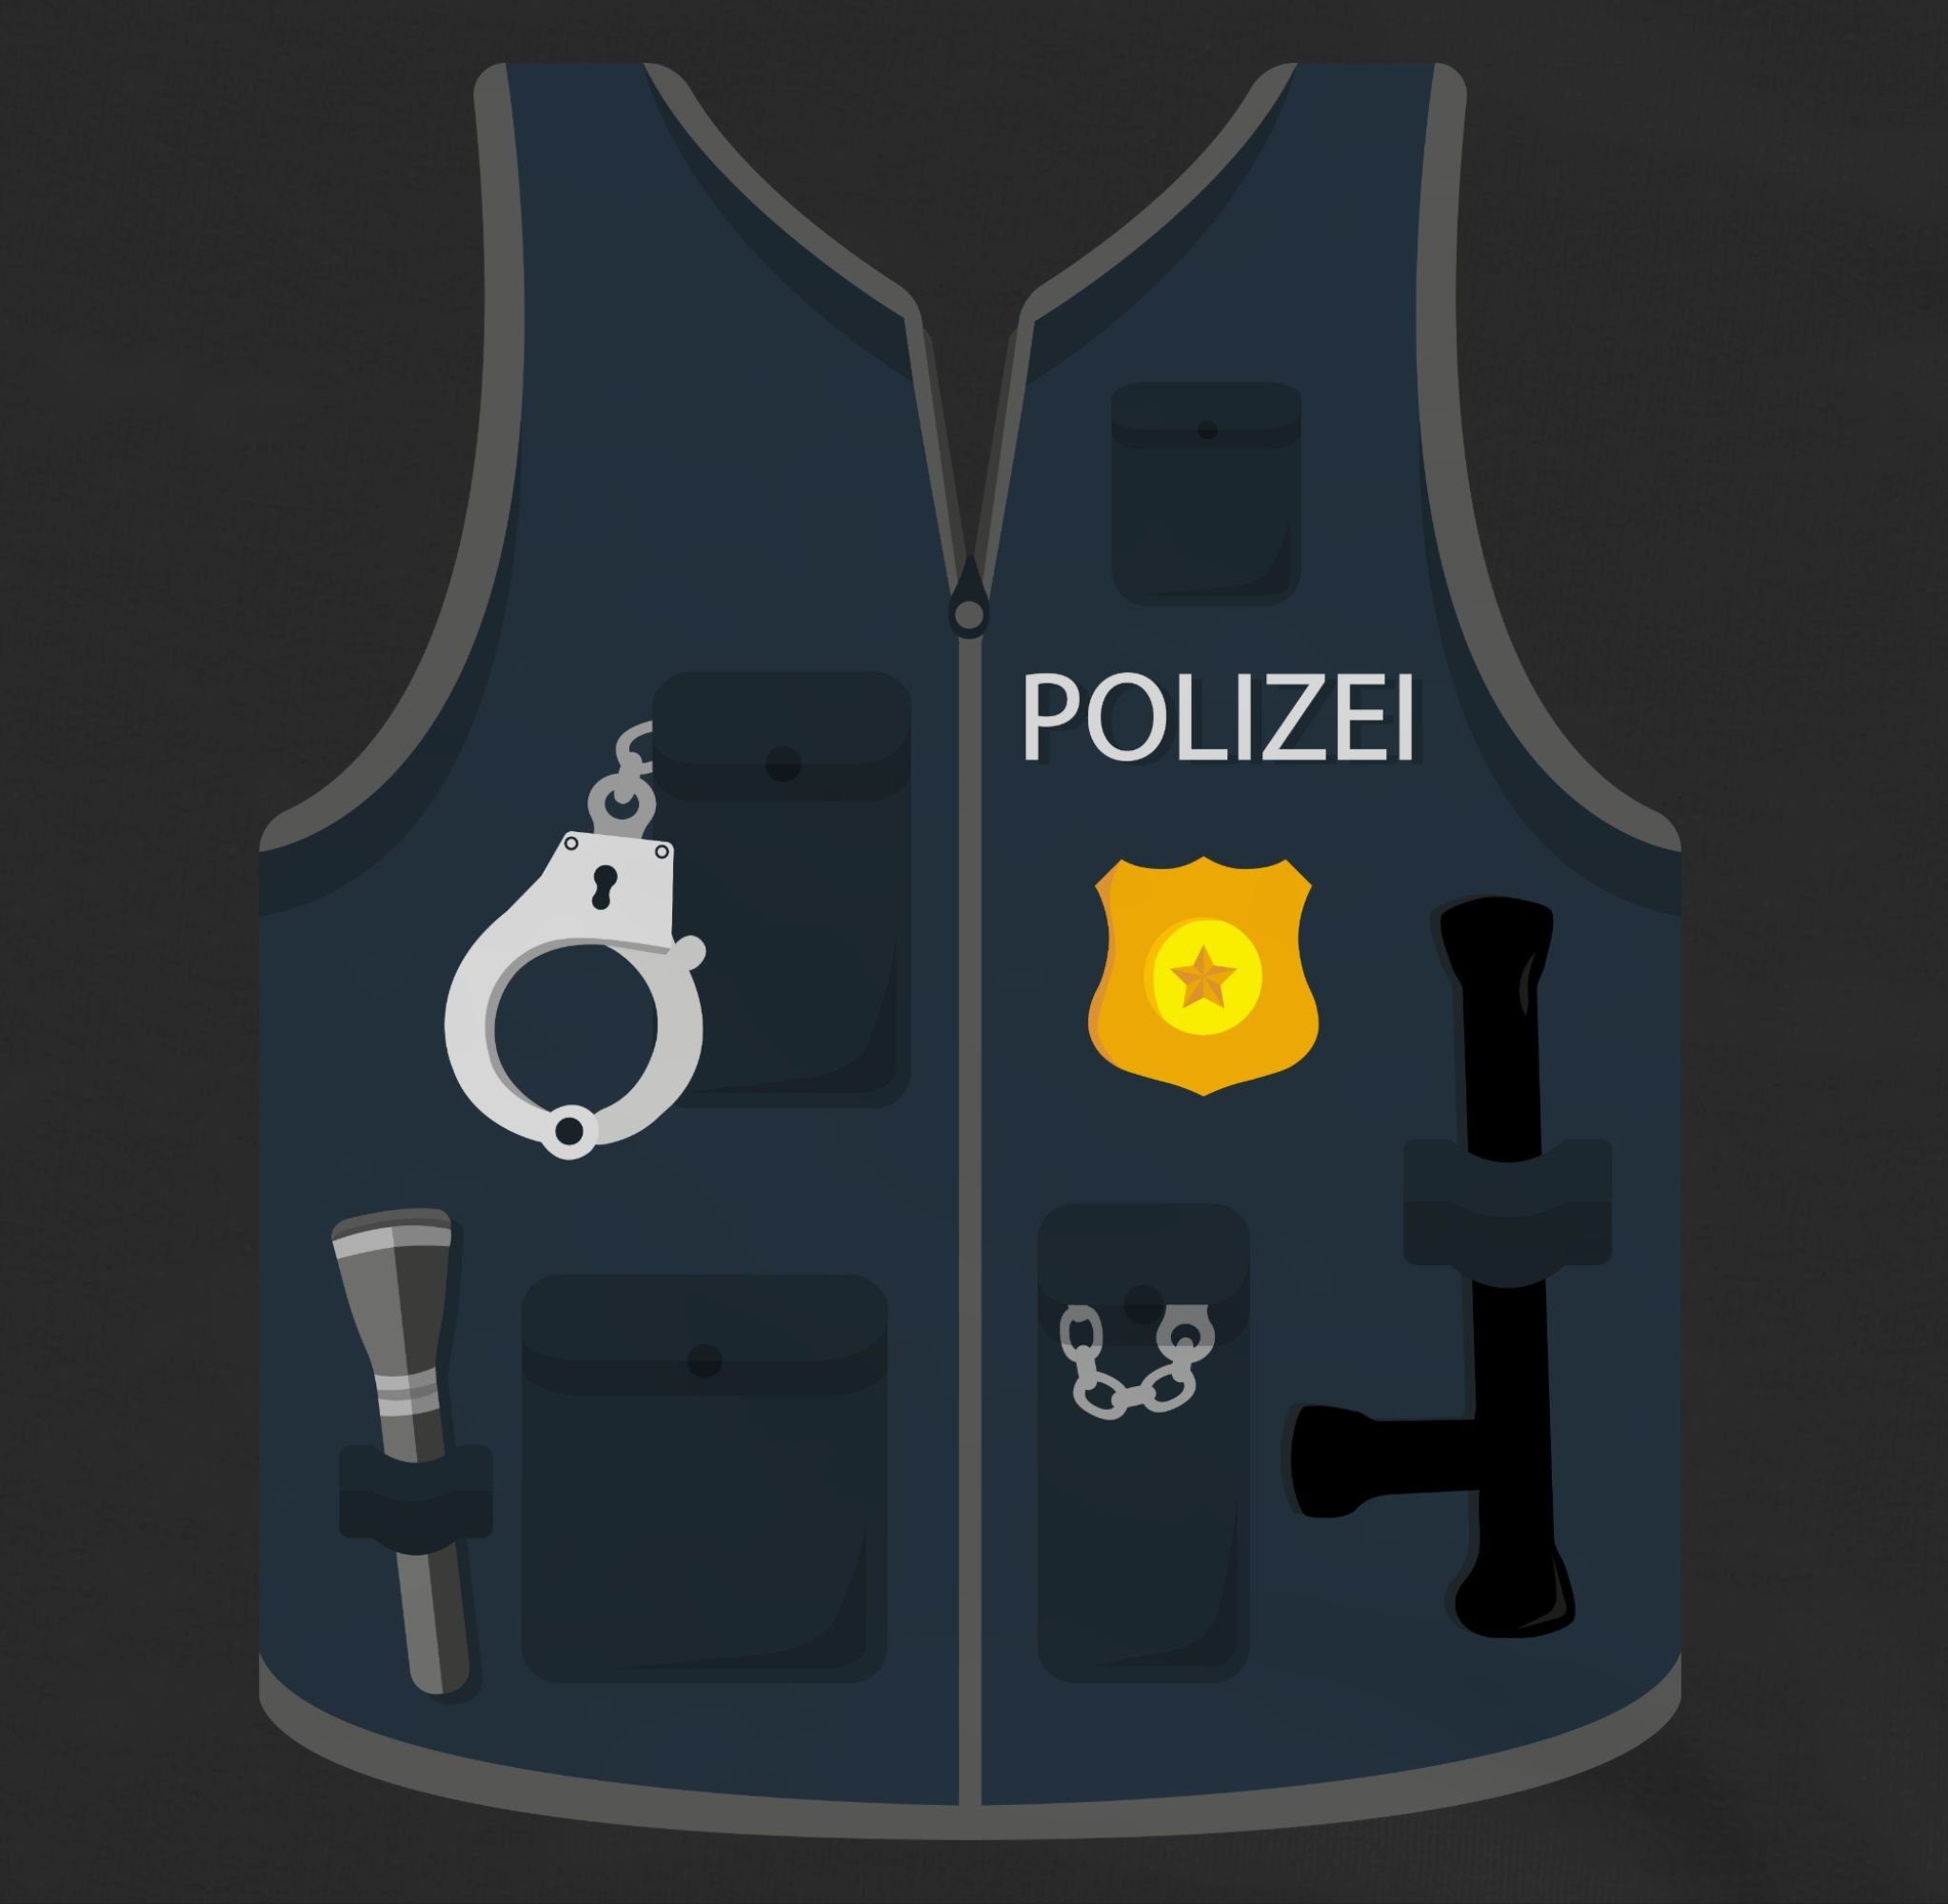 Shirtracer Sweatshirt Polizei Weste Kostüm Karneval Fasching Schwarz & 2